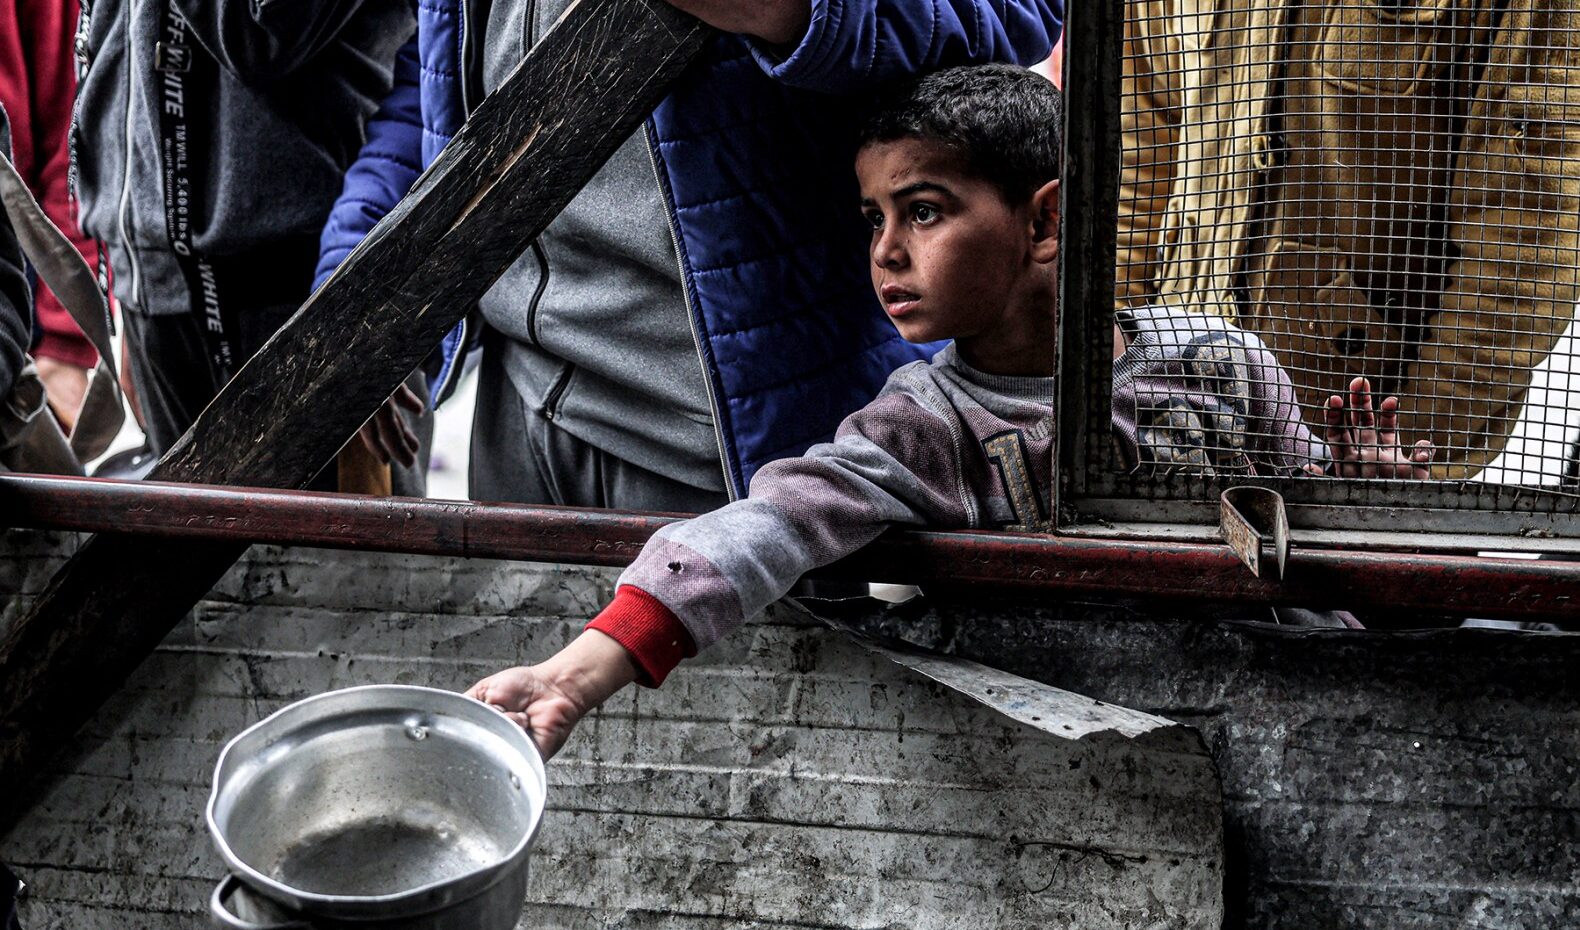 Gaza, l'appello del piccolo Yousef: "Fermate la guerra, siamo bambini, che colpa abbiamo?"